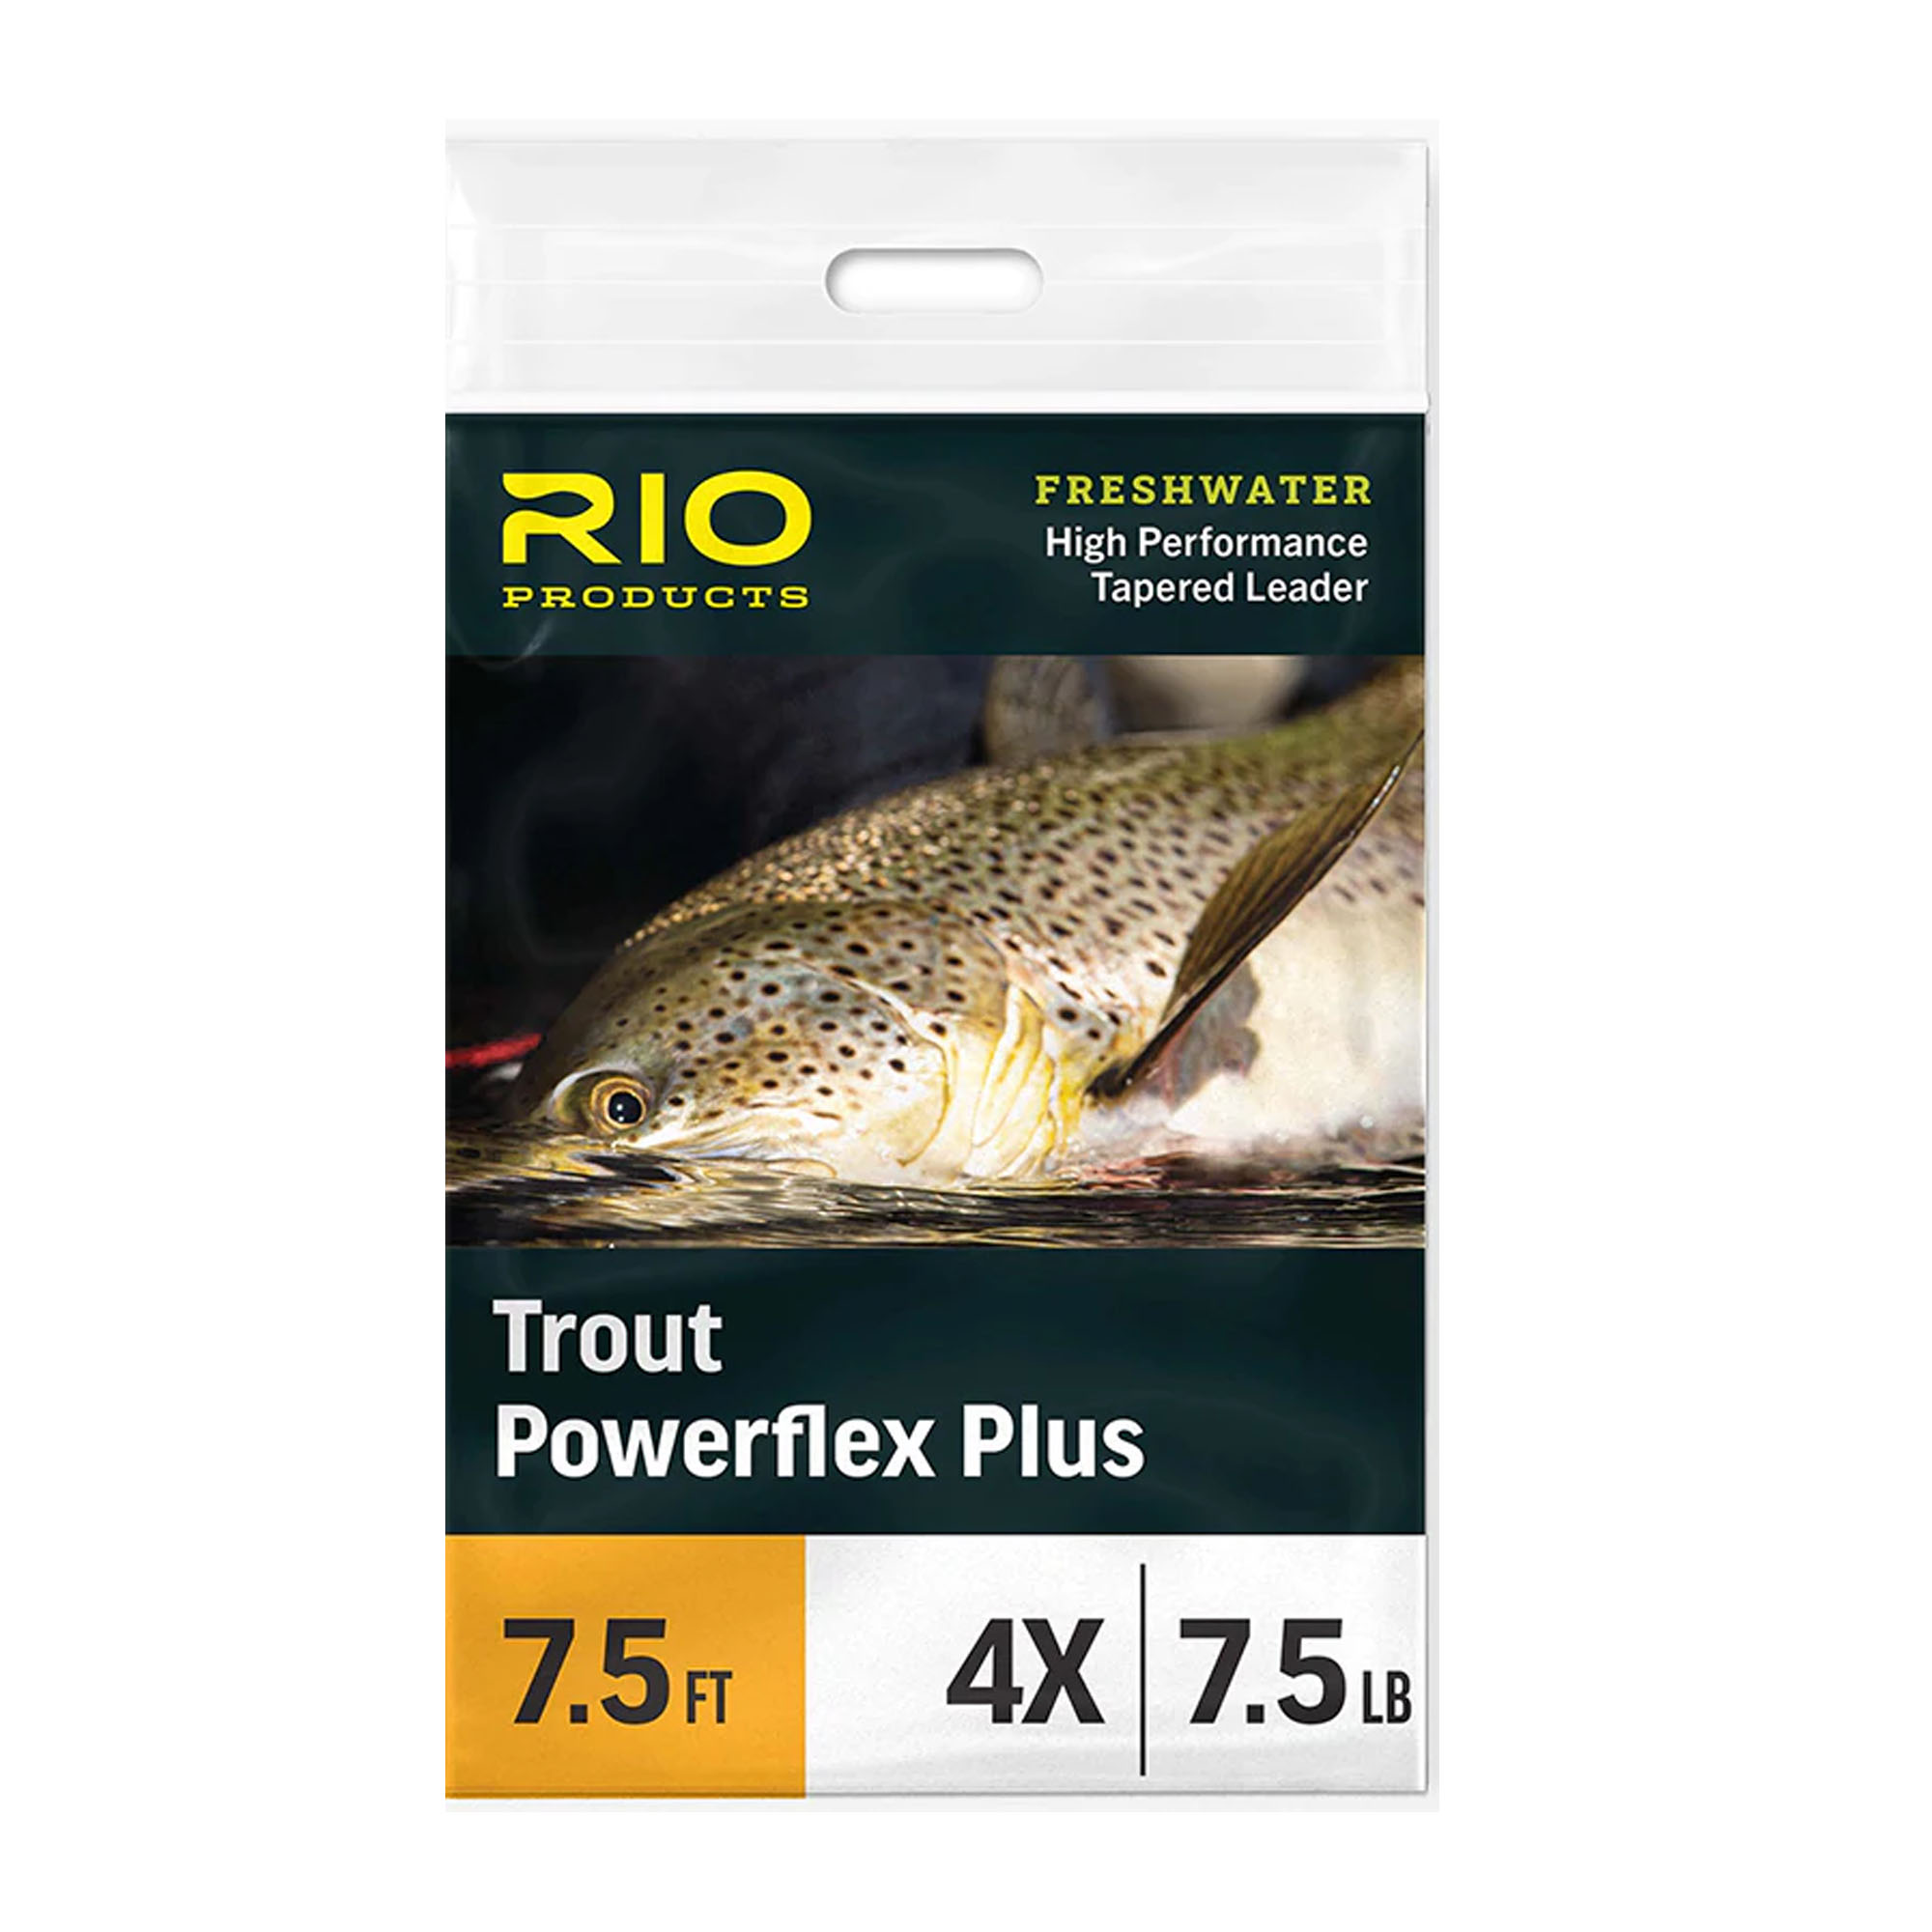 RIO Powerflex Plus Leader – Guide Flyfishing, Fly Fishing Rods, Reels, Sage, Redington, RIO